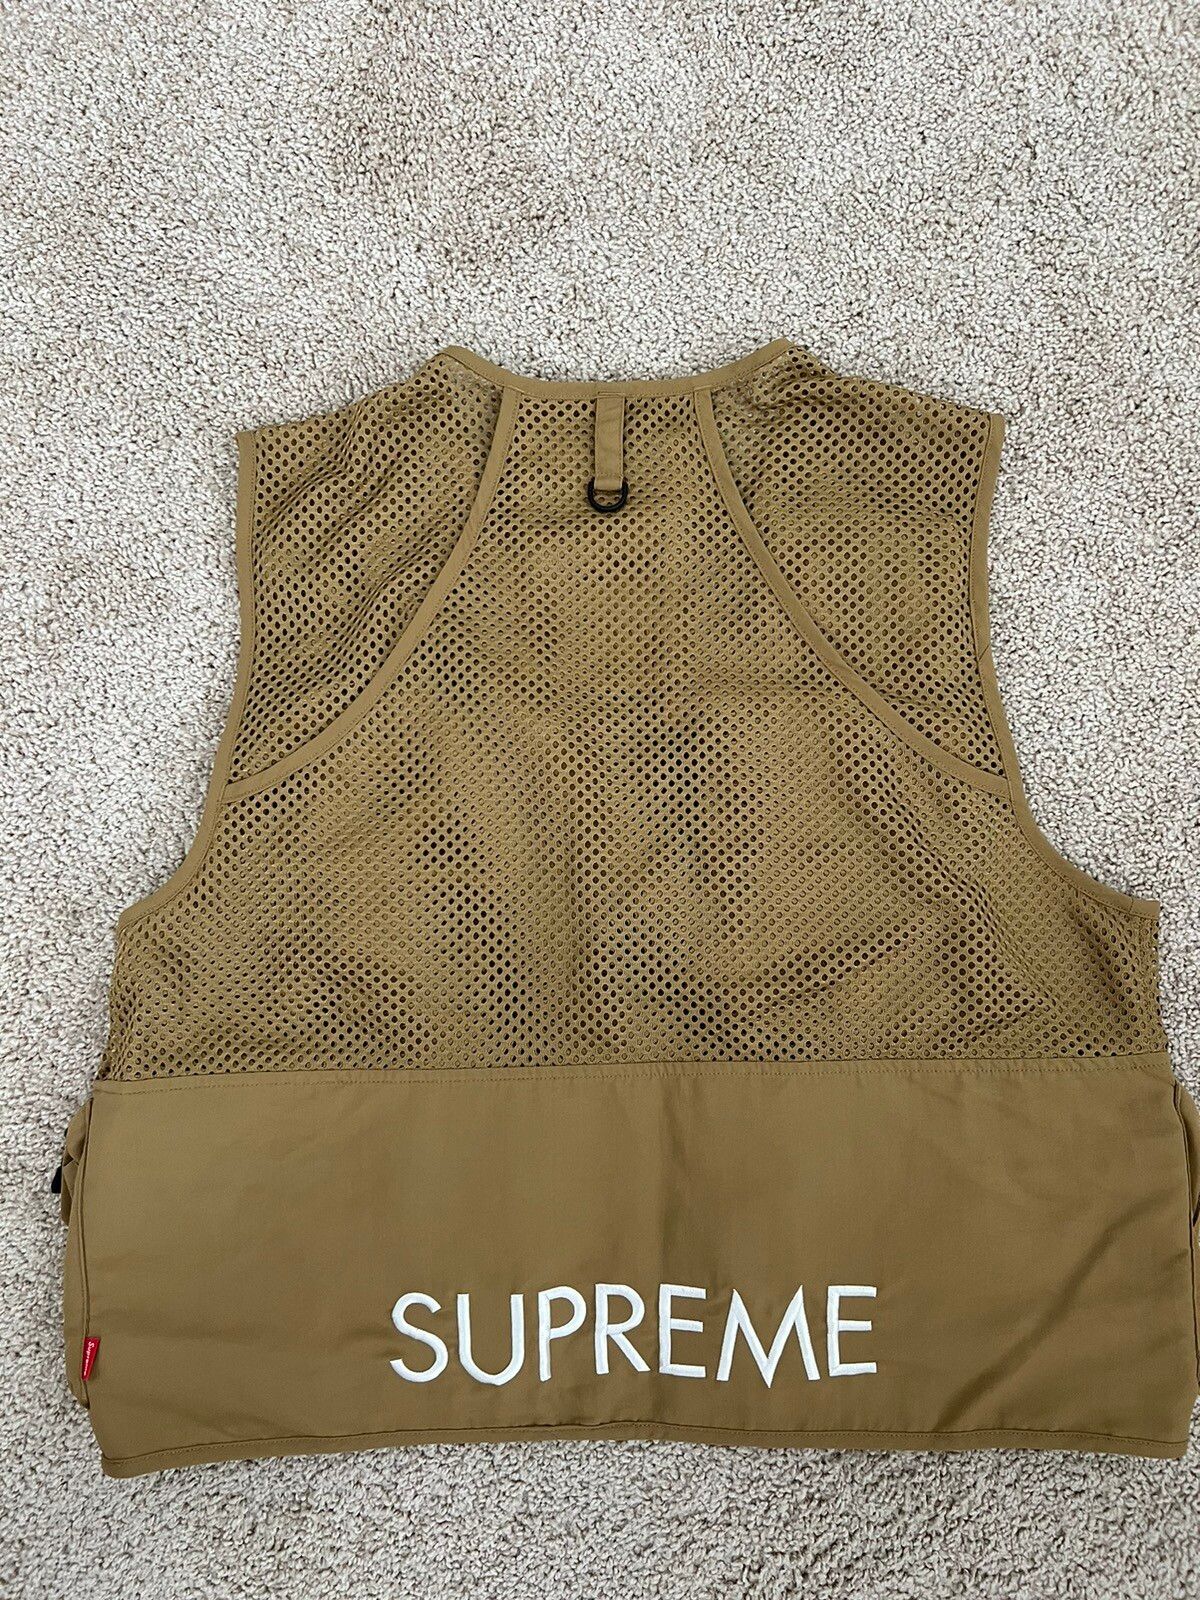 Supreme Supreme The North Face Cargo Vest | Grailed